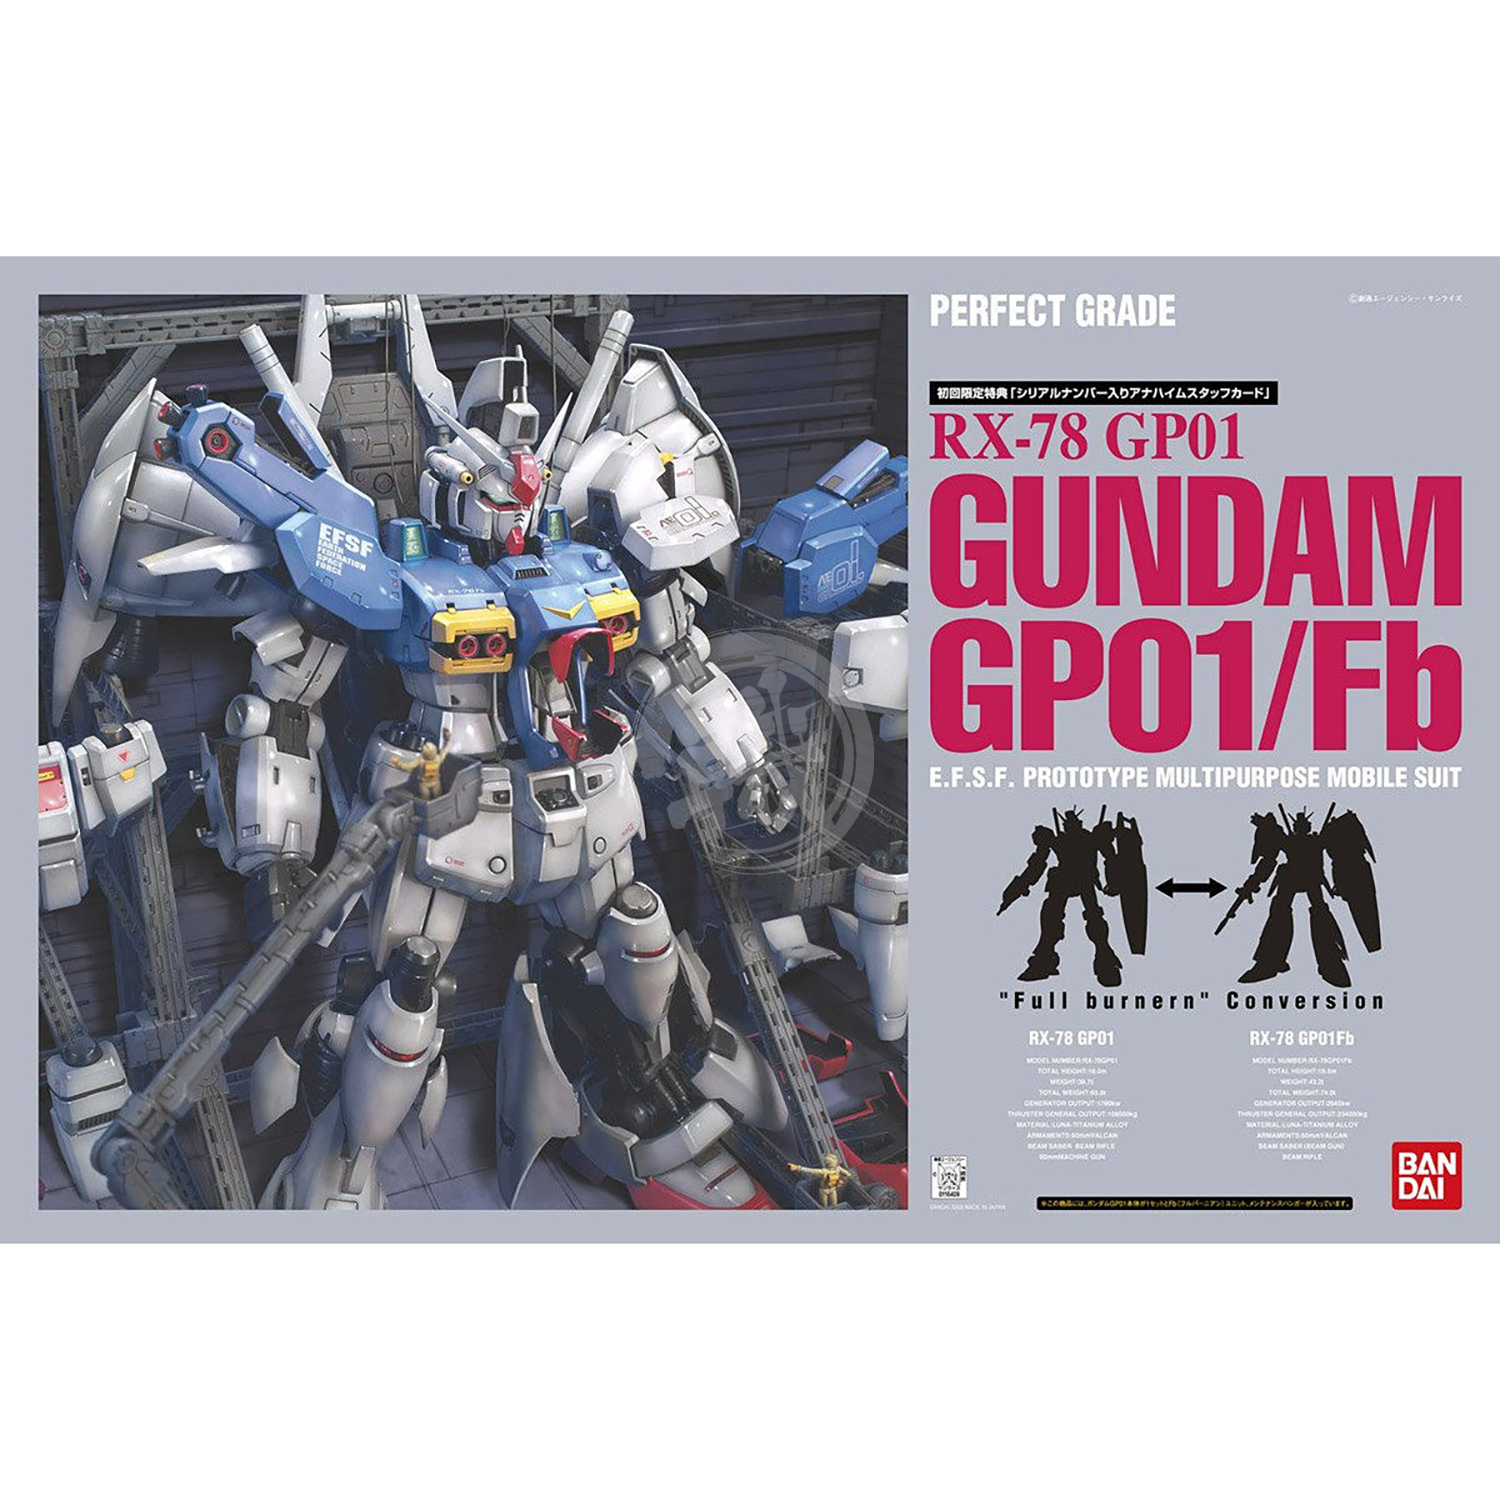 Bandai - PG RX-78 Gundam GP-01/FB - ShokuninGunpla